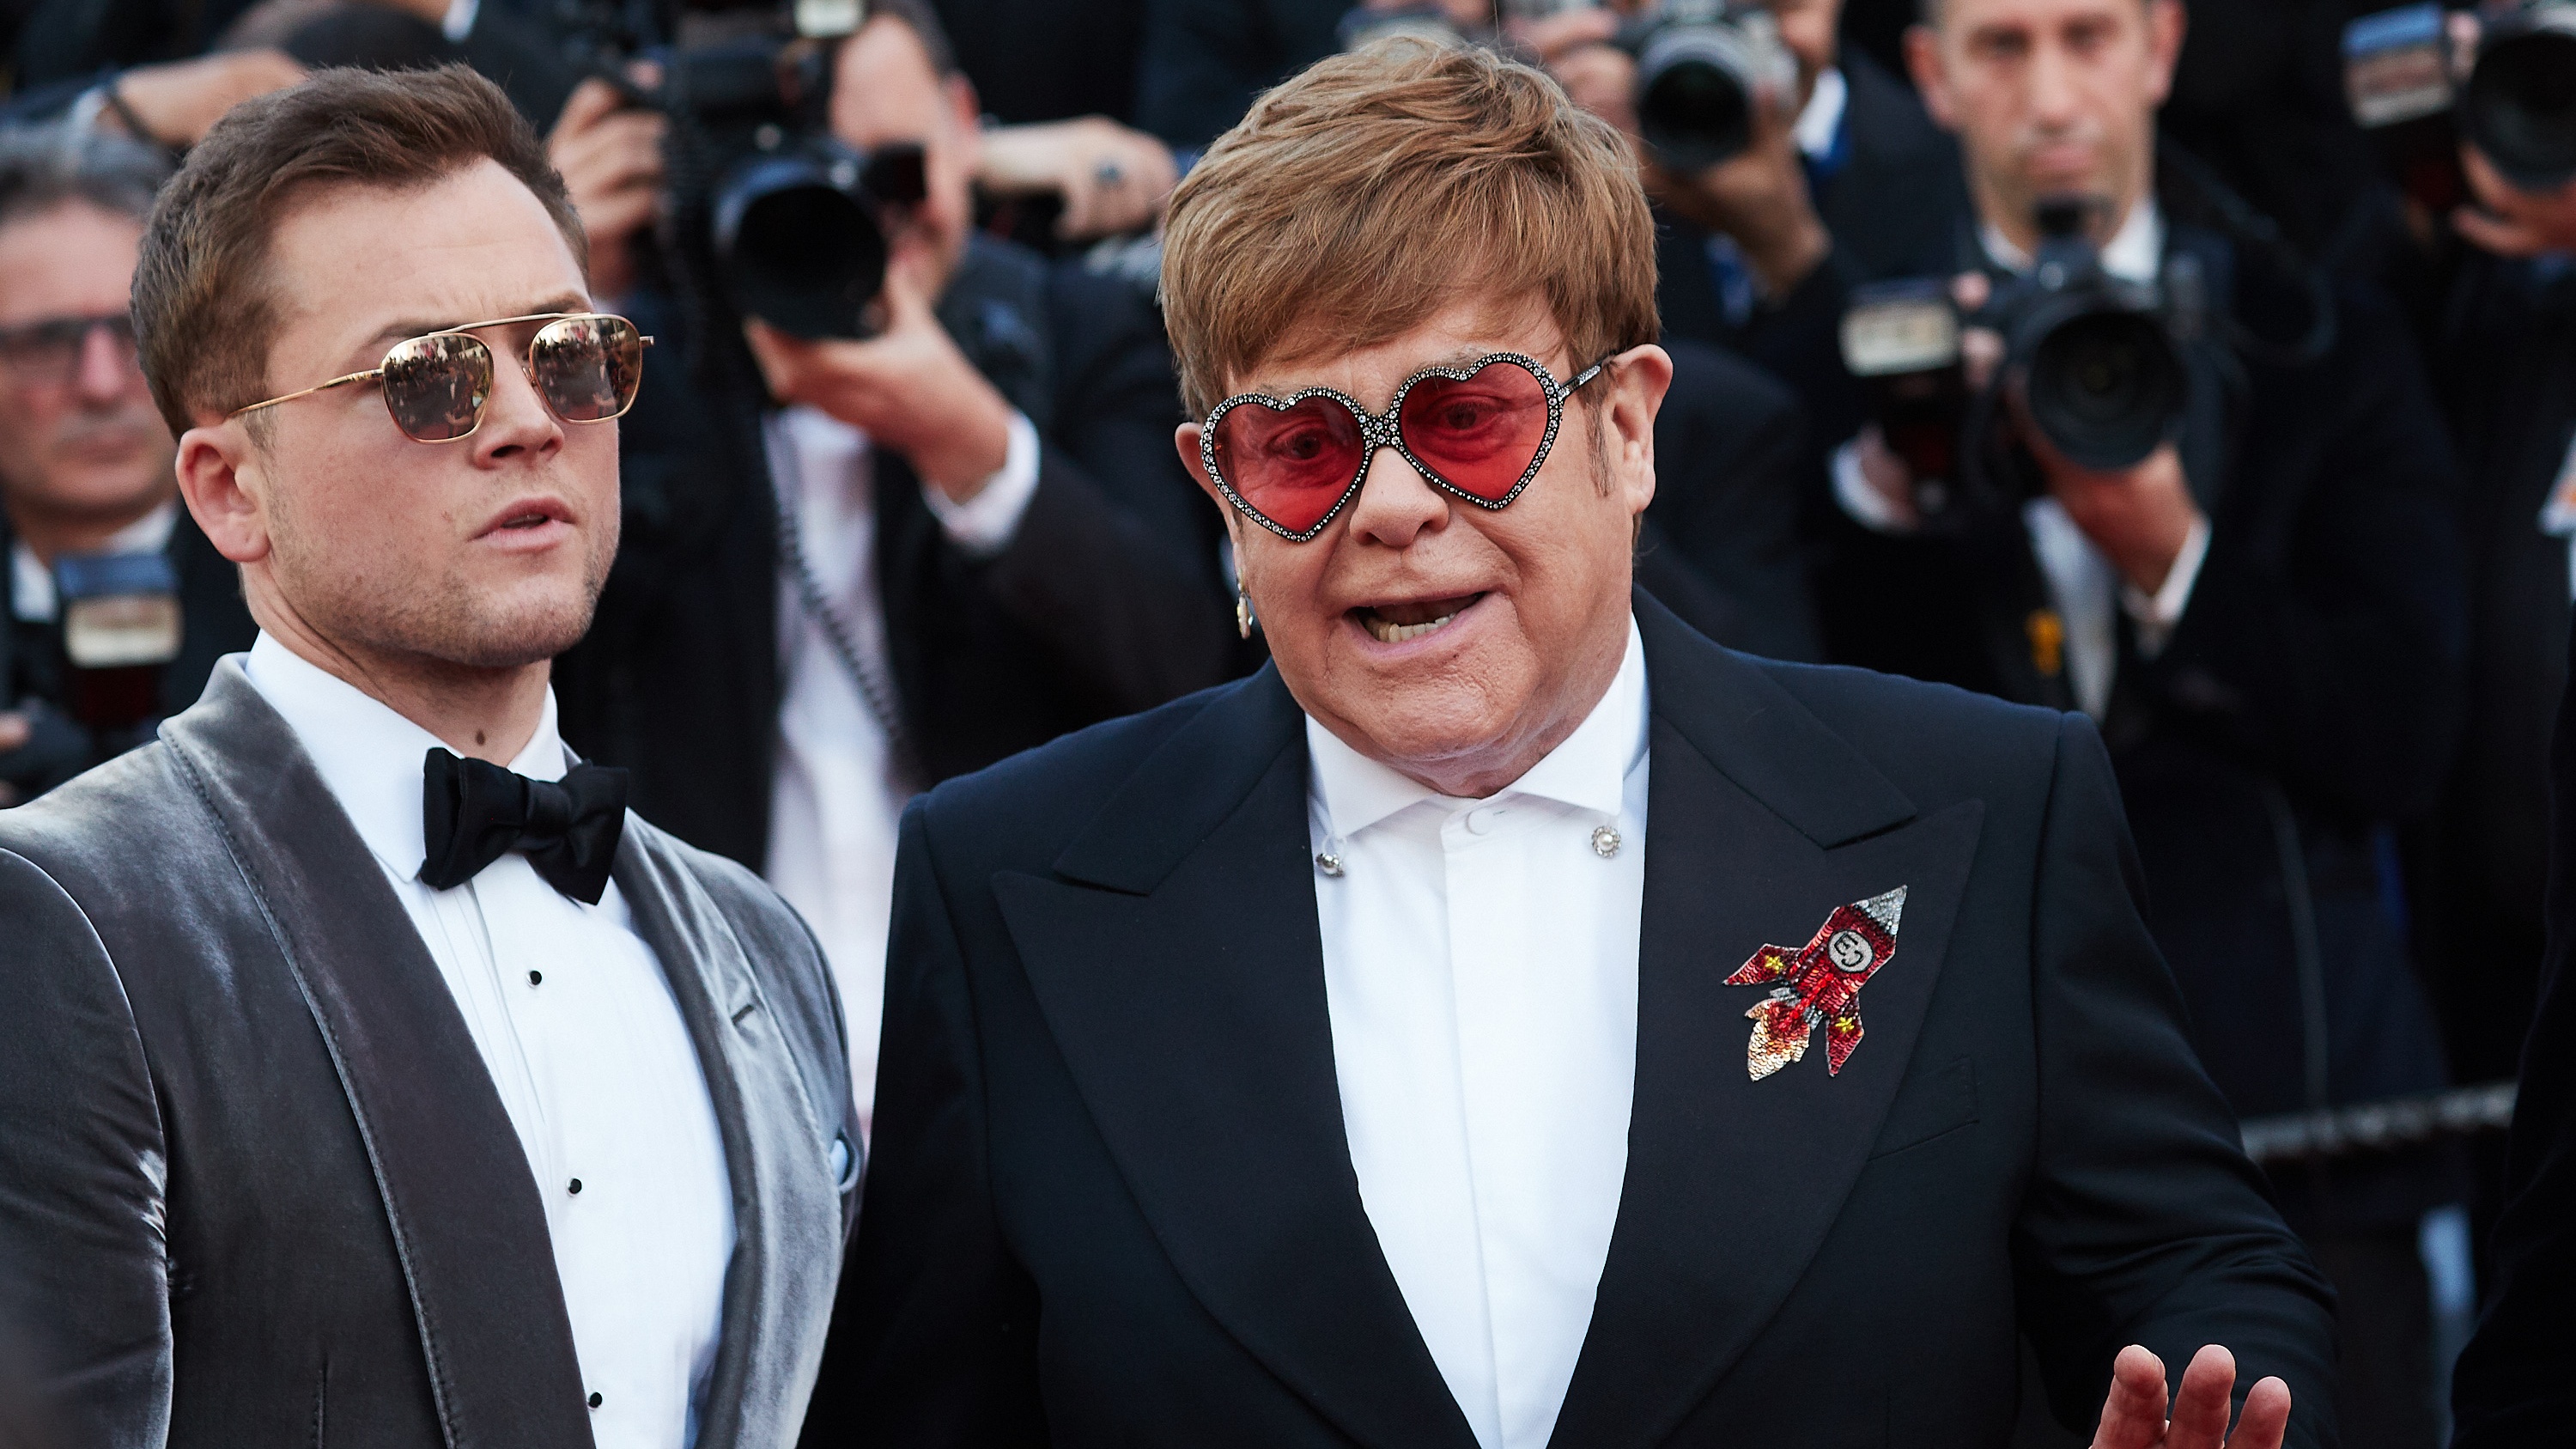 I’m Still Standing Elton John Stood Firm On Decision Not